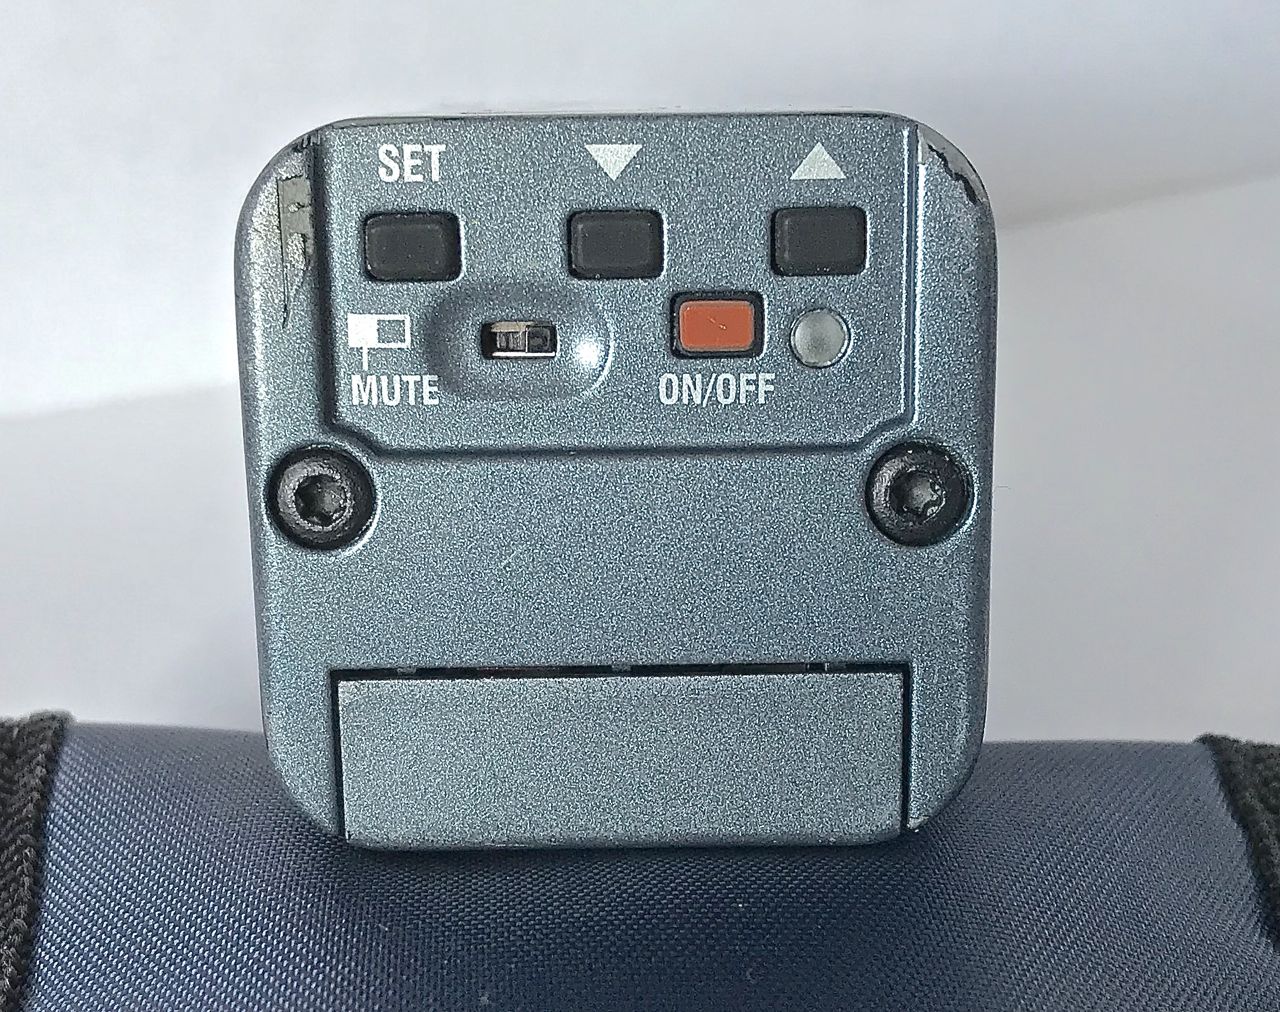 Rear controls of SKP100